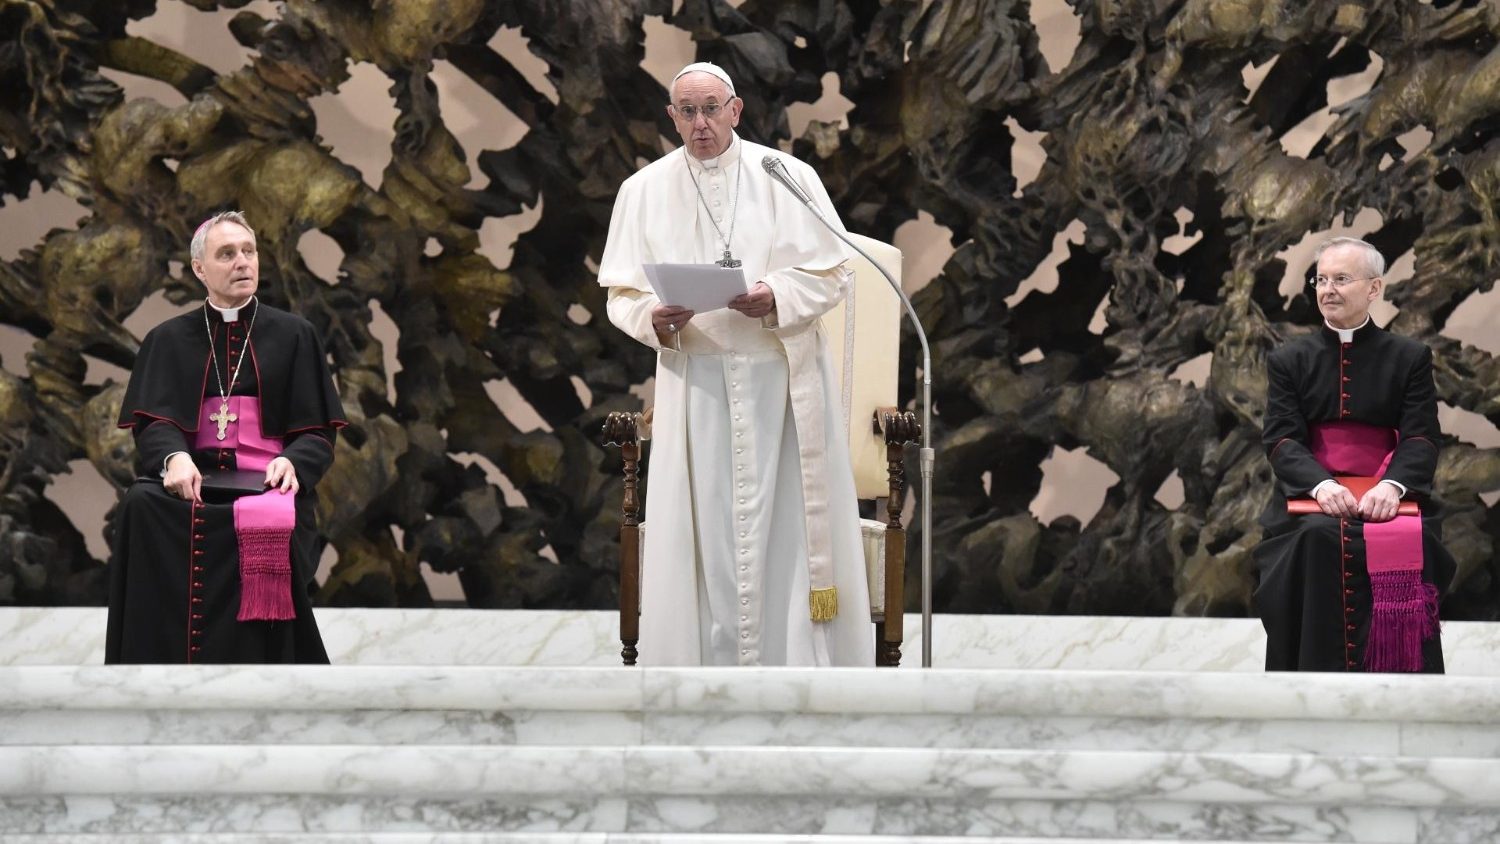 Auguri Del Papa Ai Dipendenti Vaticani Diversi Santi Lavorano Qui